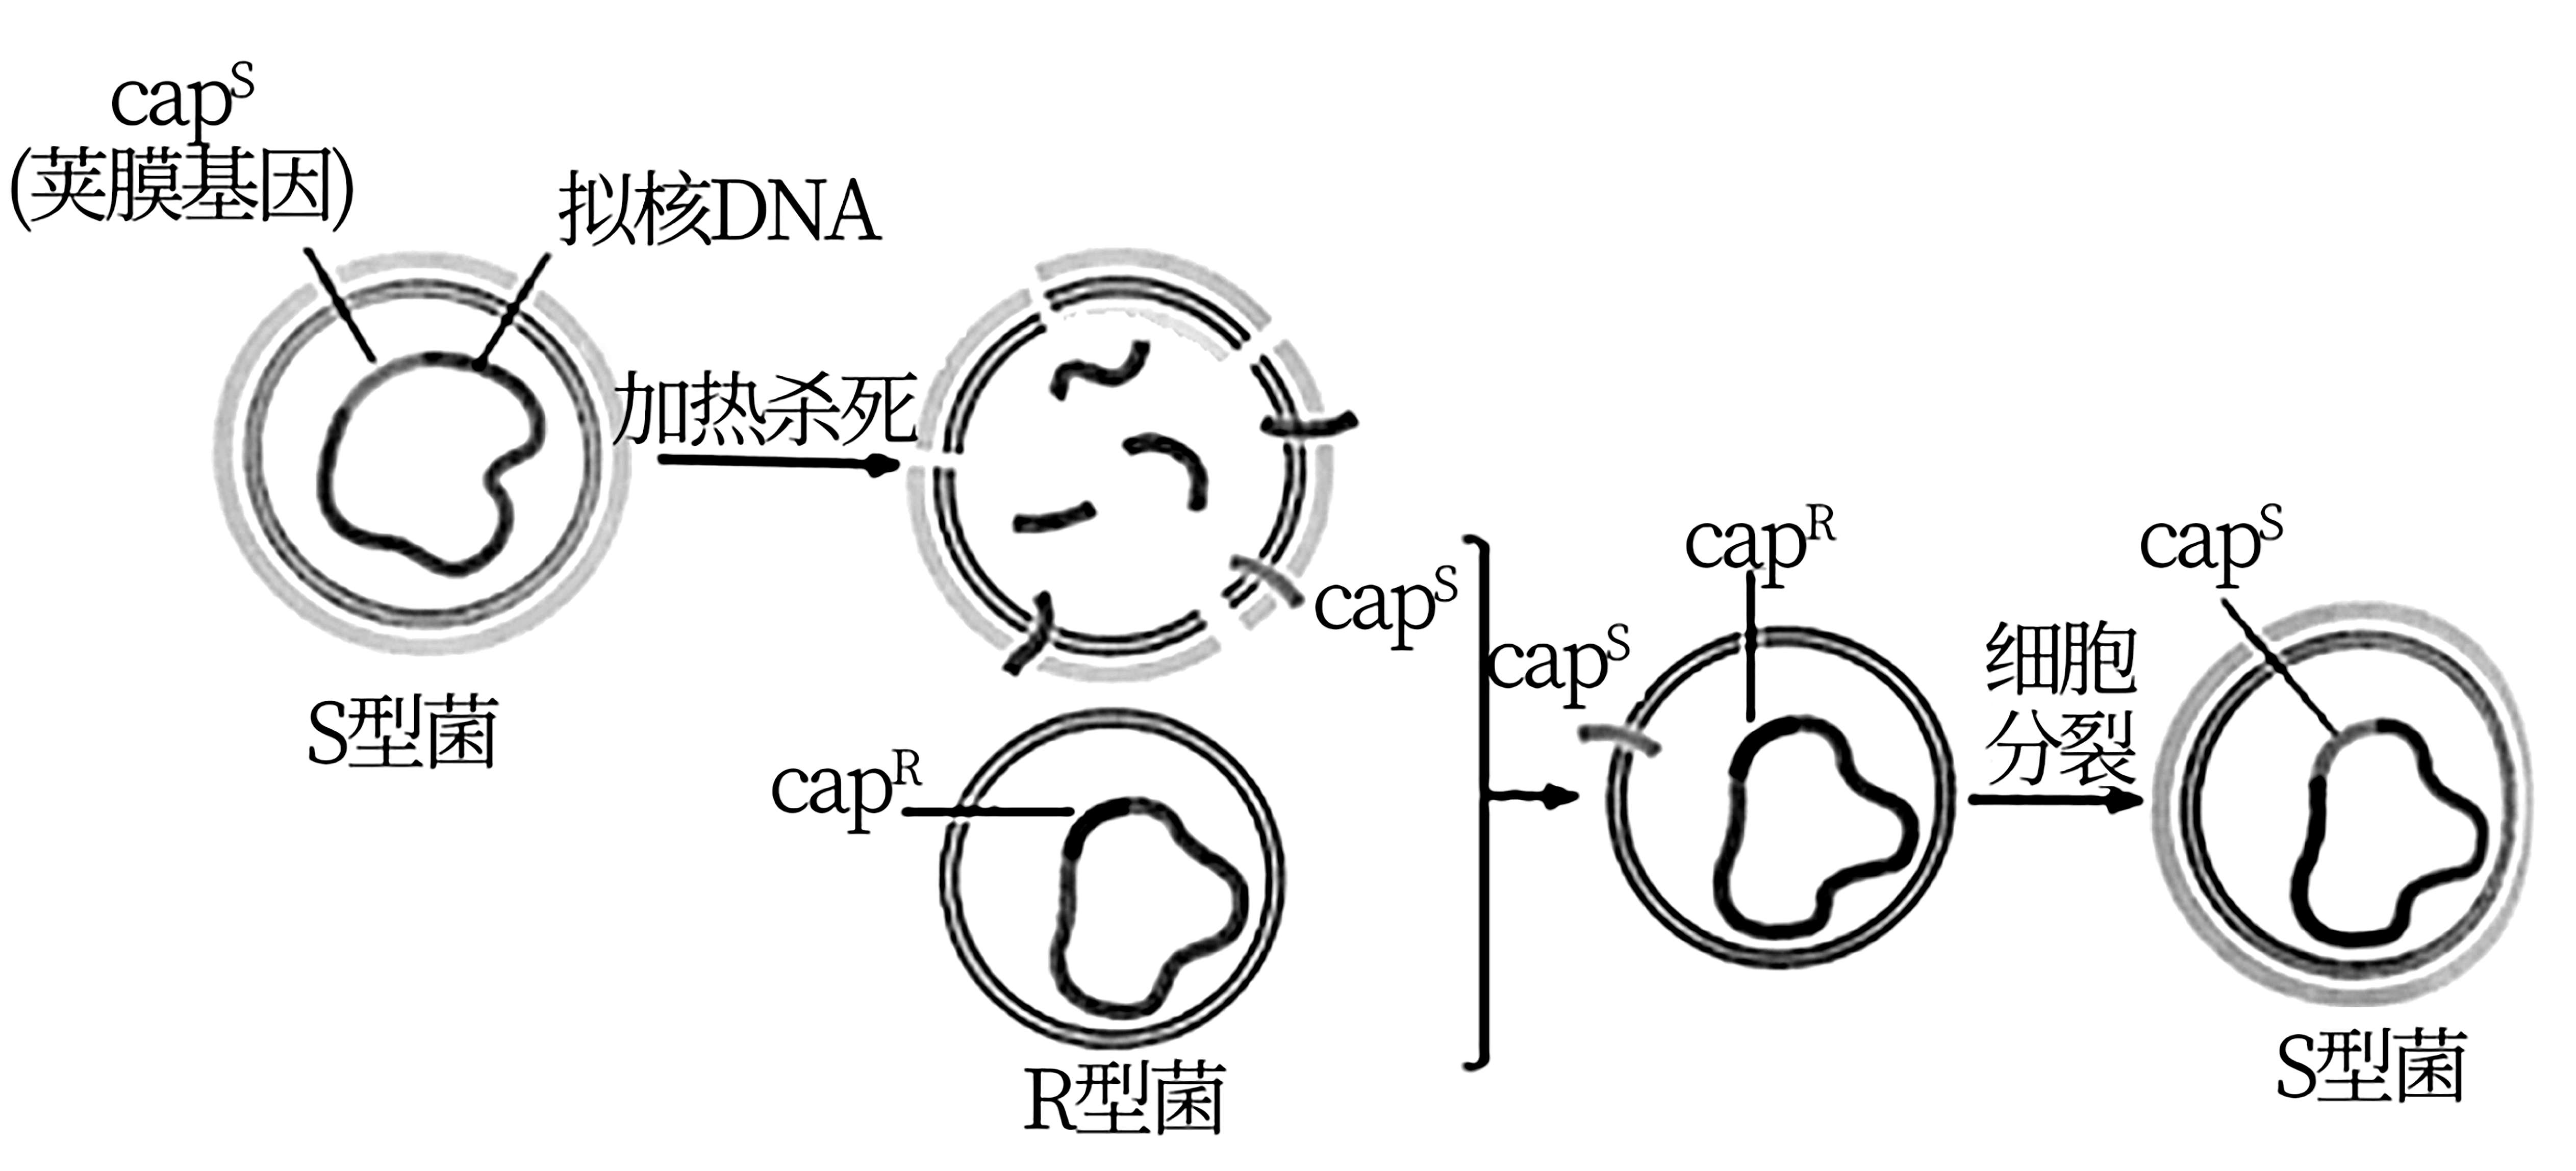 肺炎链球菌结构图图片